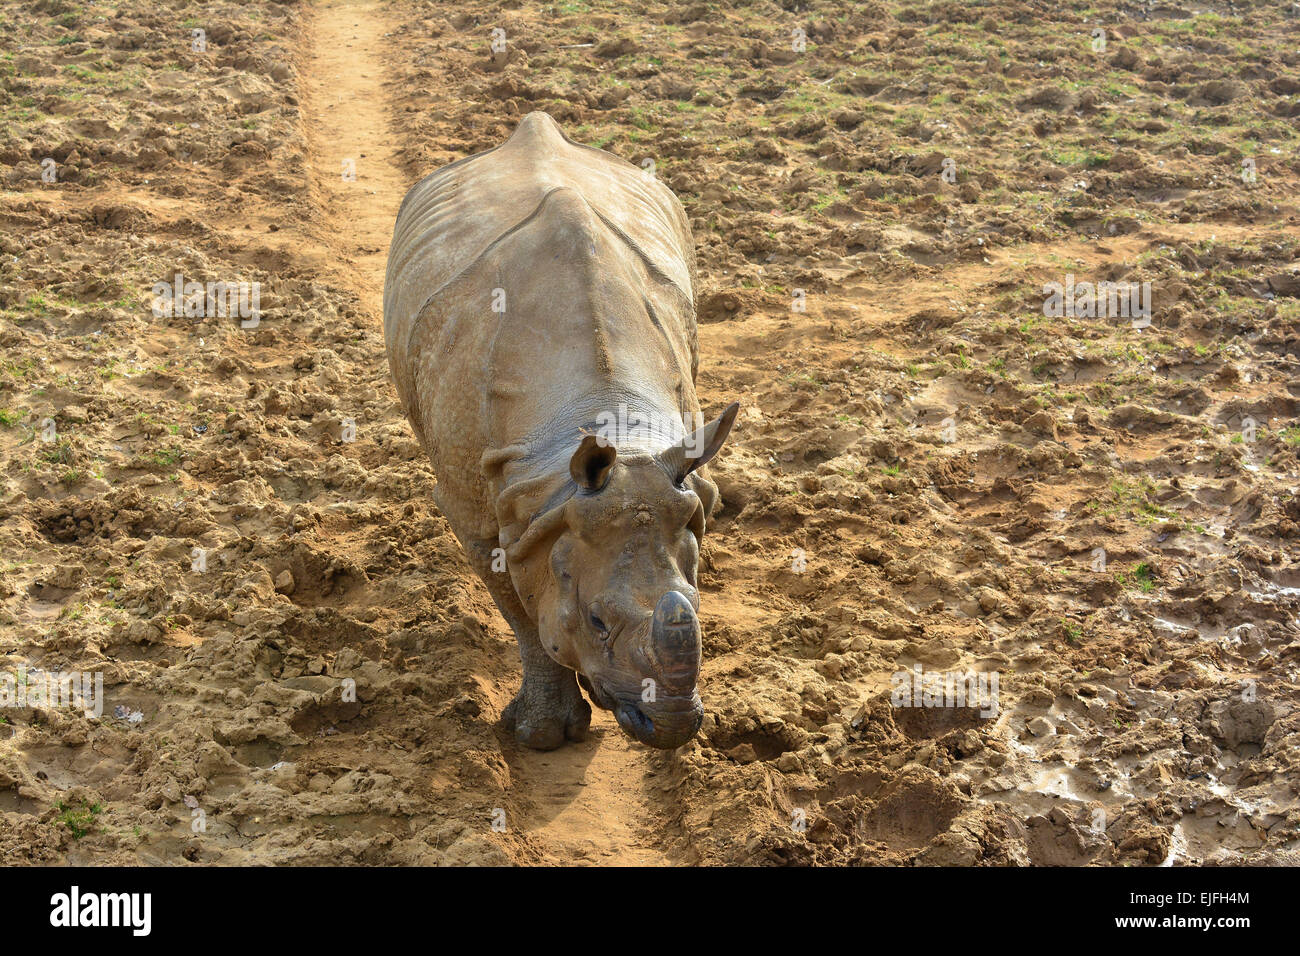 Rhinocéros indien marche sur une voie si un champ boueux (usage éditorial uniquement) Banque D'Images